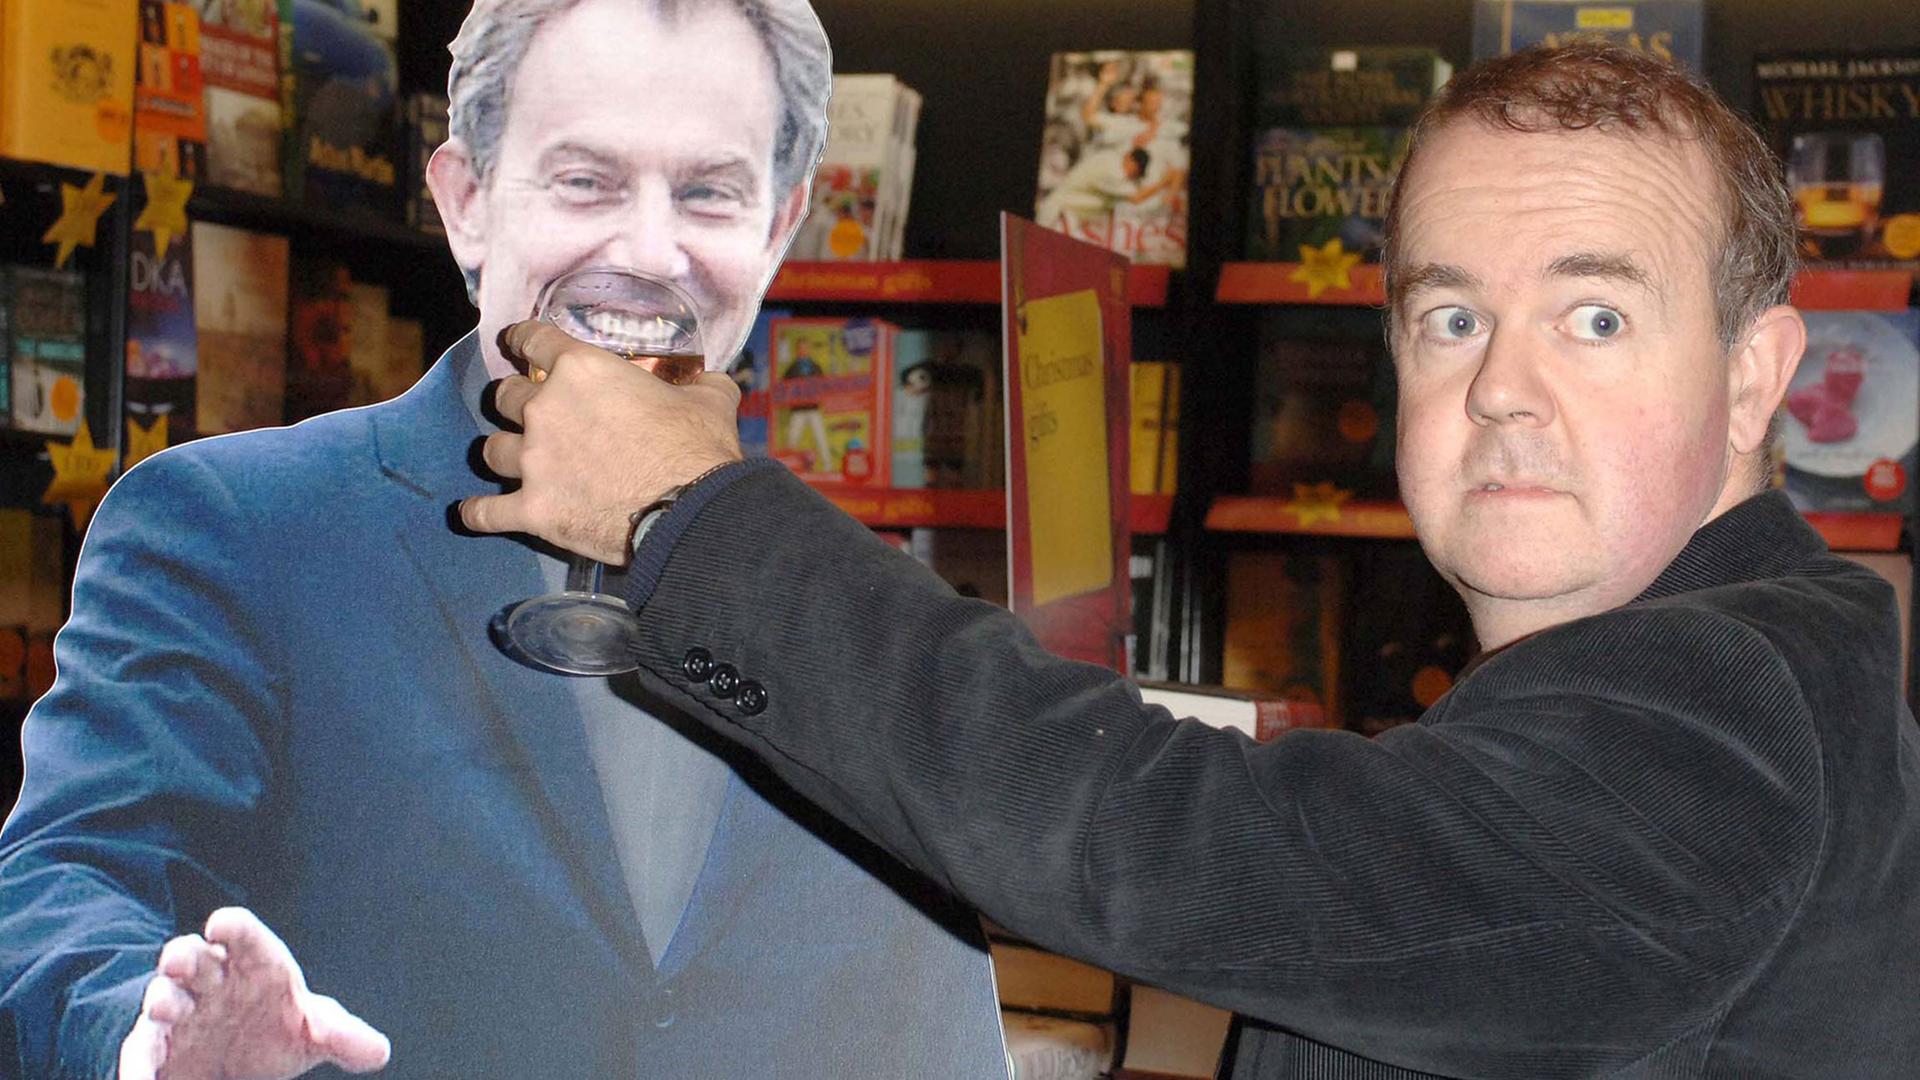 Der britische Komiker Ian Hislop hält bei einer Signierstunde für sein Buch "Private Eye Annual 2005" in London einer Pappfigur des britischen Premierministers Tony Blair ein Weinglas an den Mund und grinst.